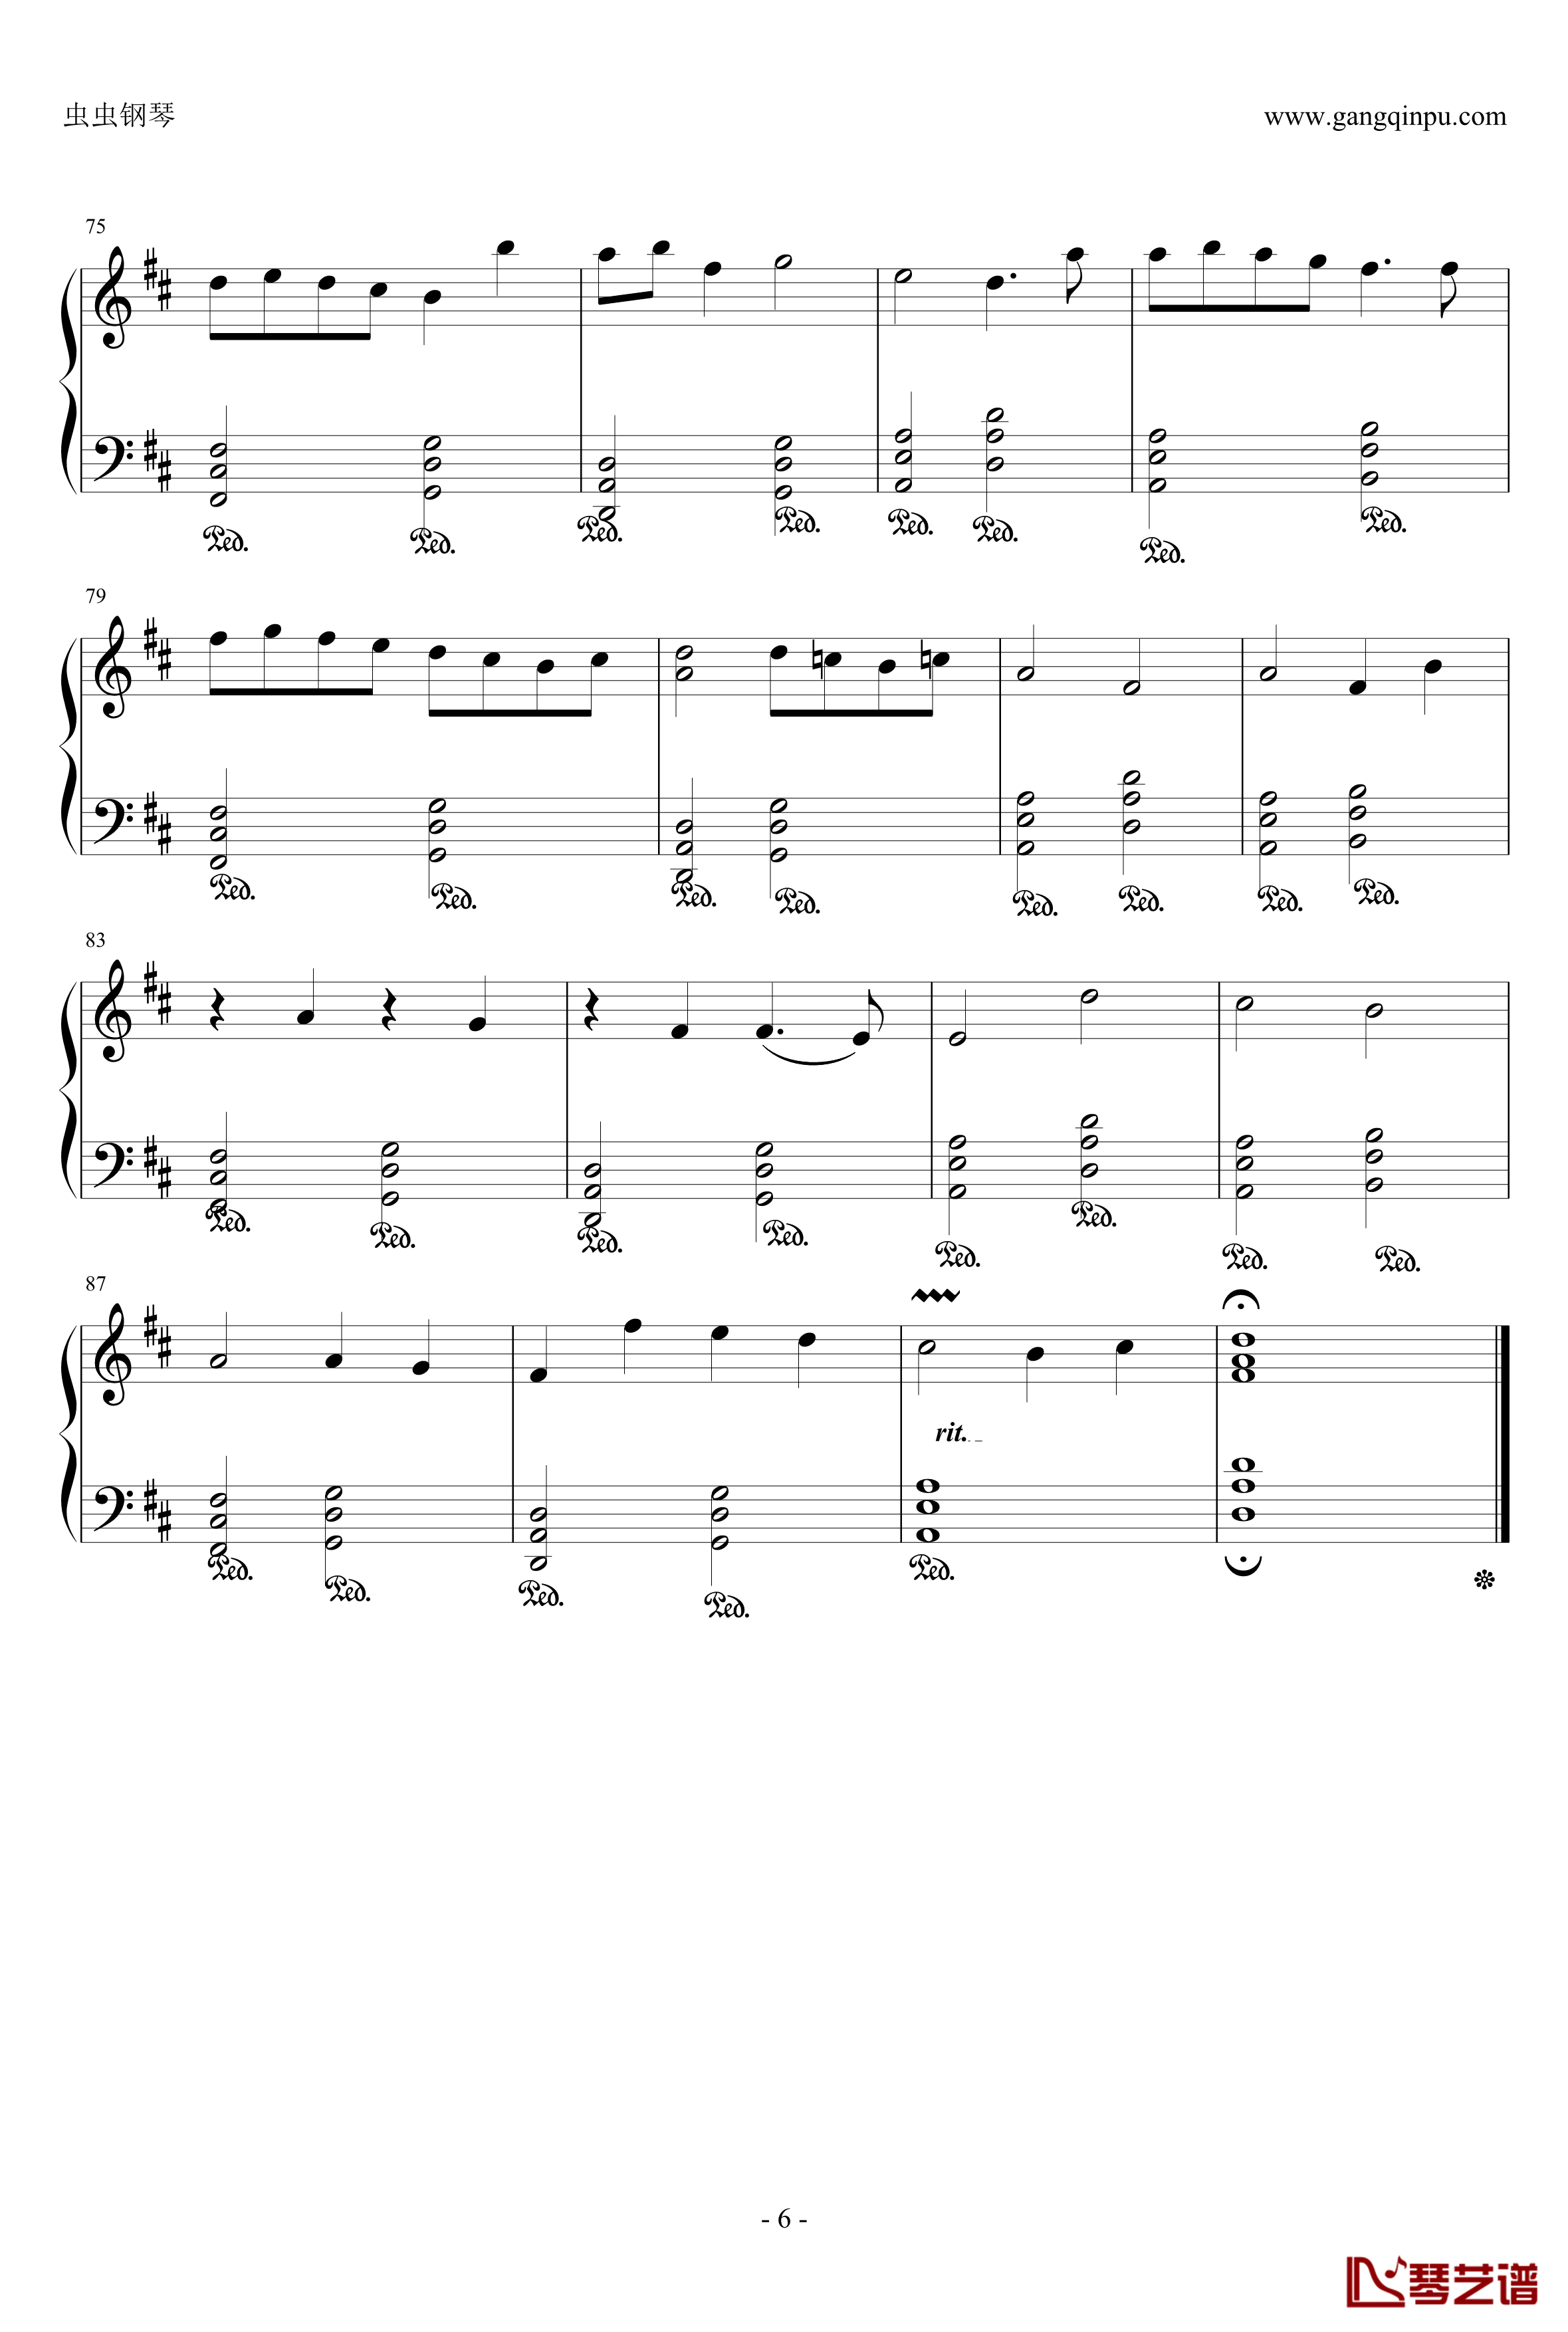 卡农：大爱人间钢琴谱-完整版-帕赫贝尔-Pachelbel6